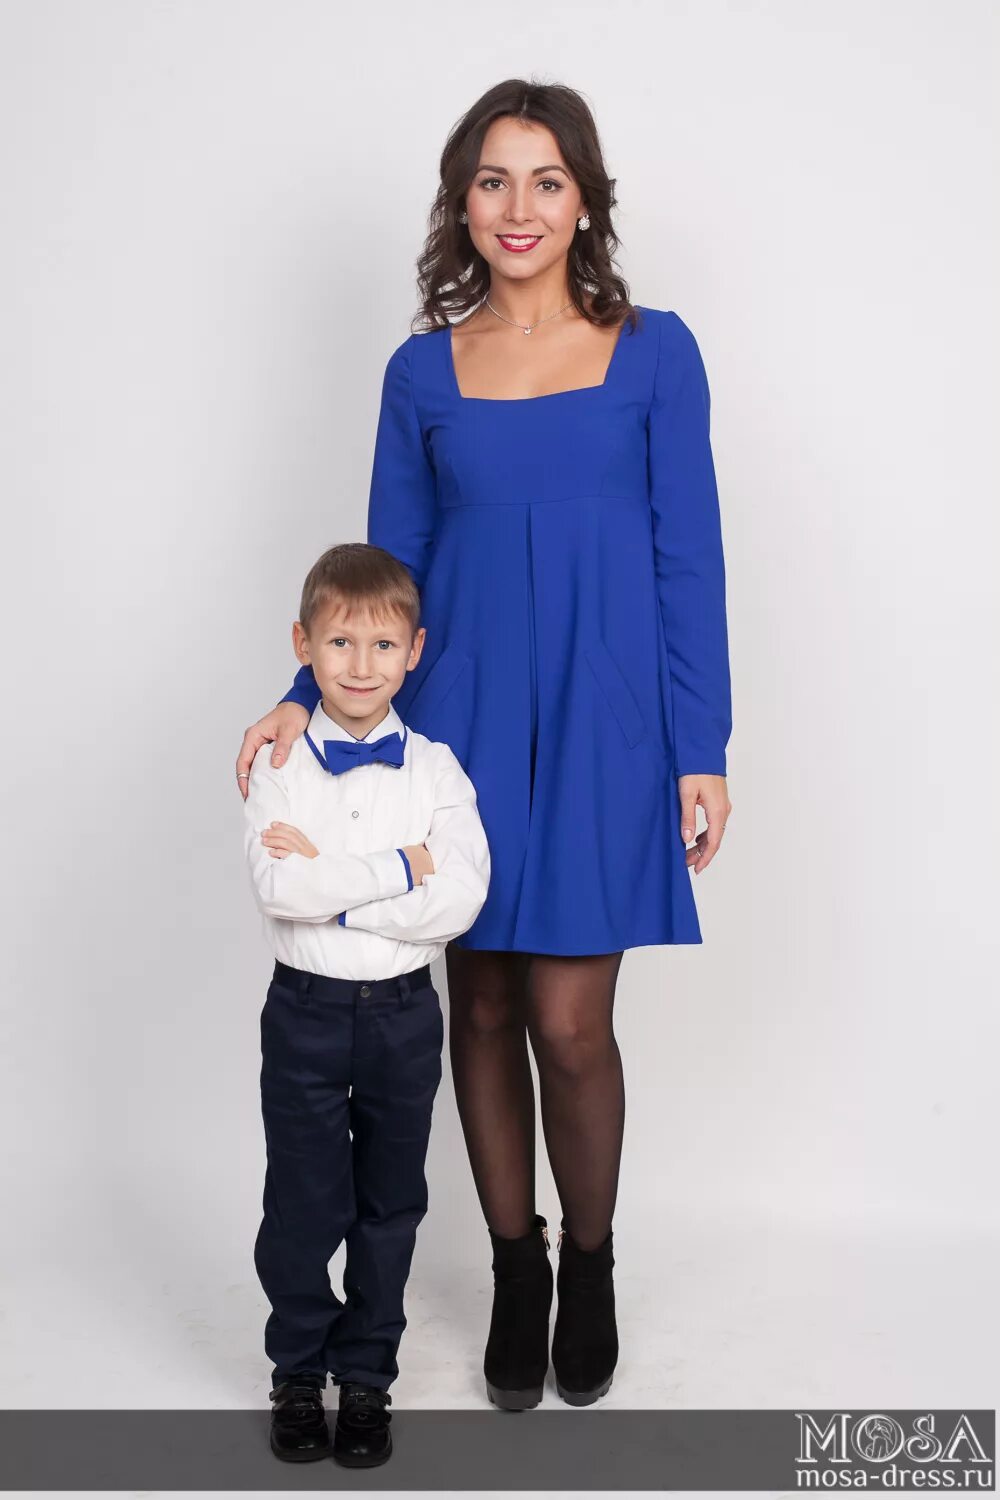 Мама в синем платье. Наряды для мамы и сына. Одинаковая одежда для мамы и сына.